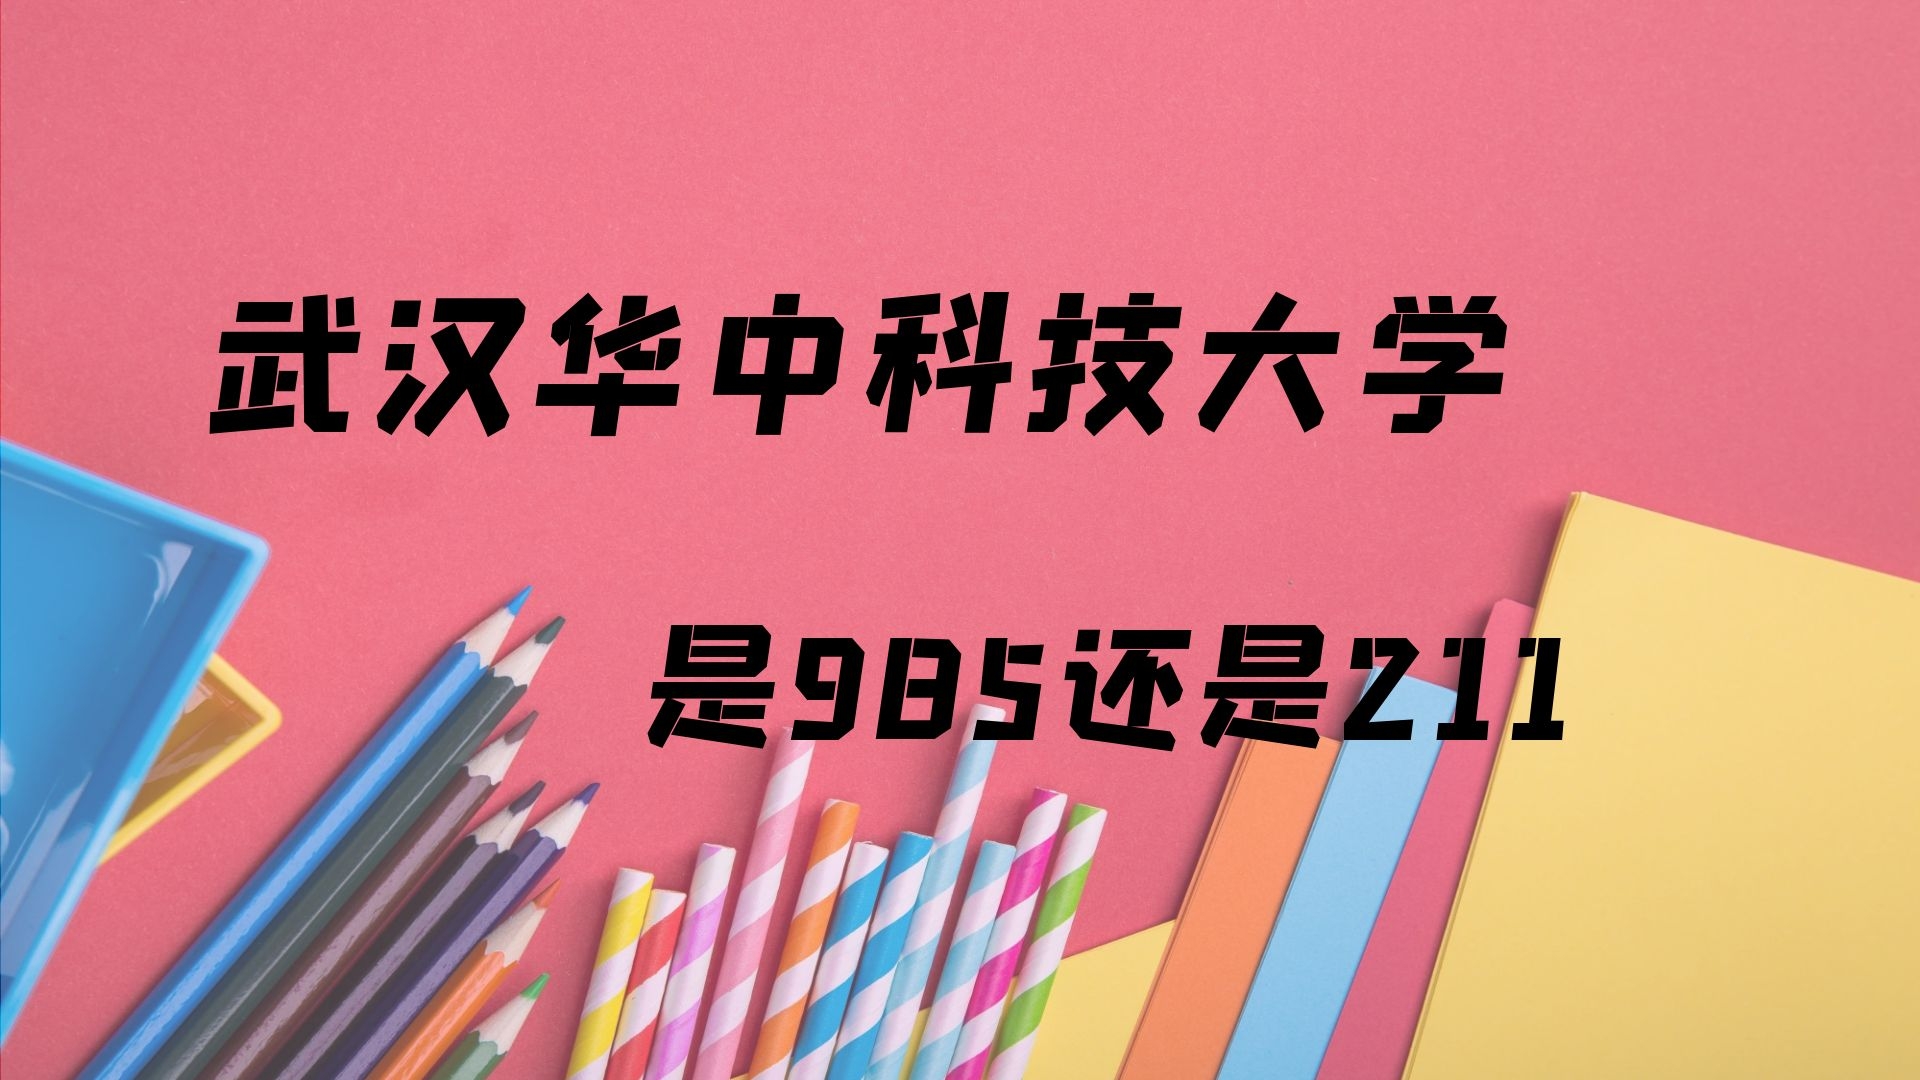 武汉华中科技大学是985还是211